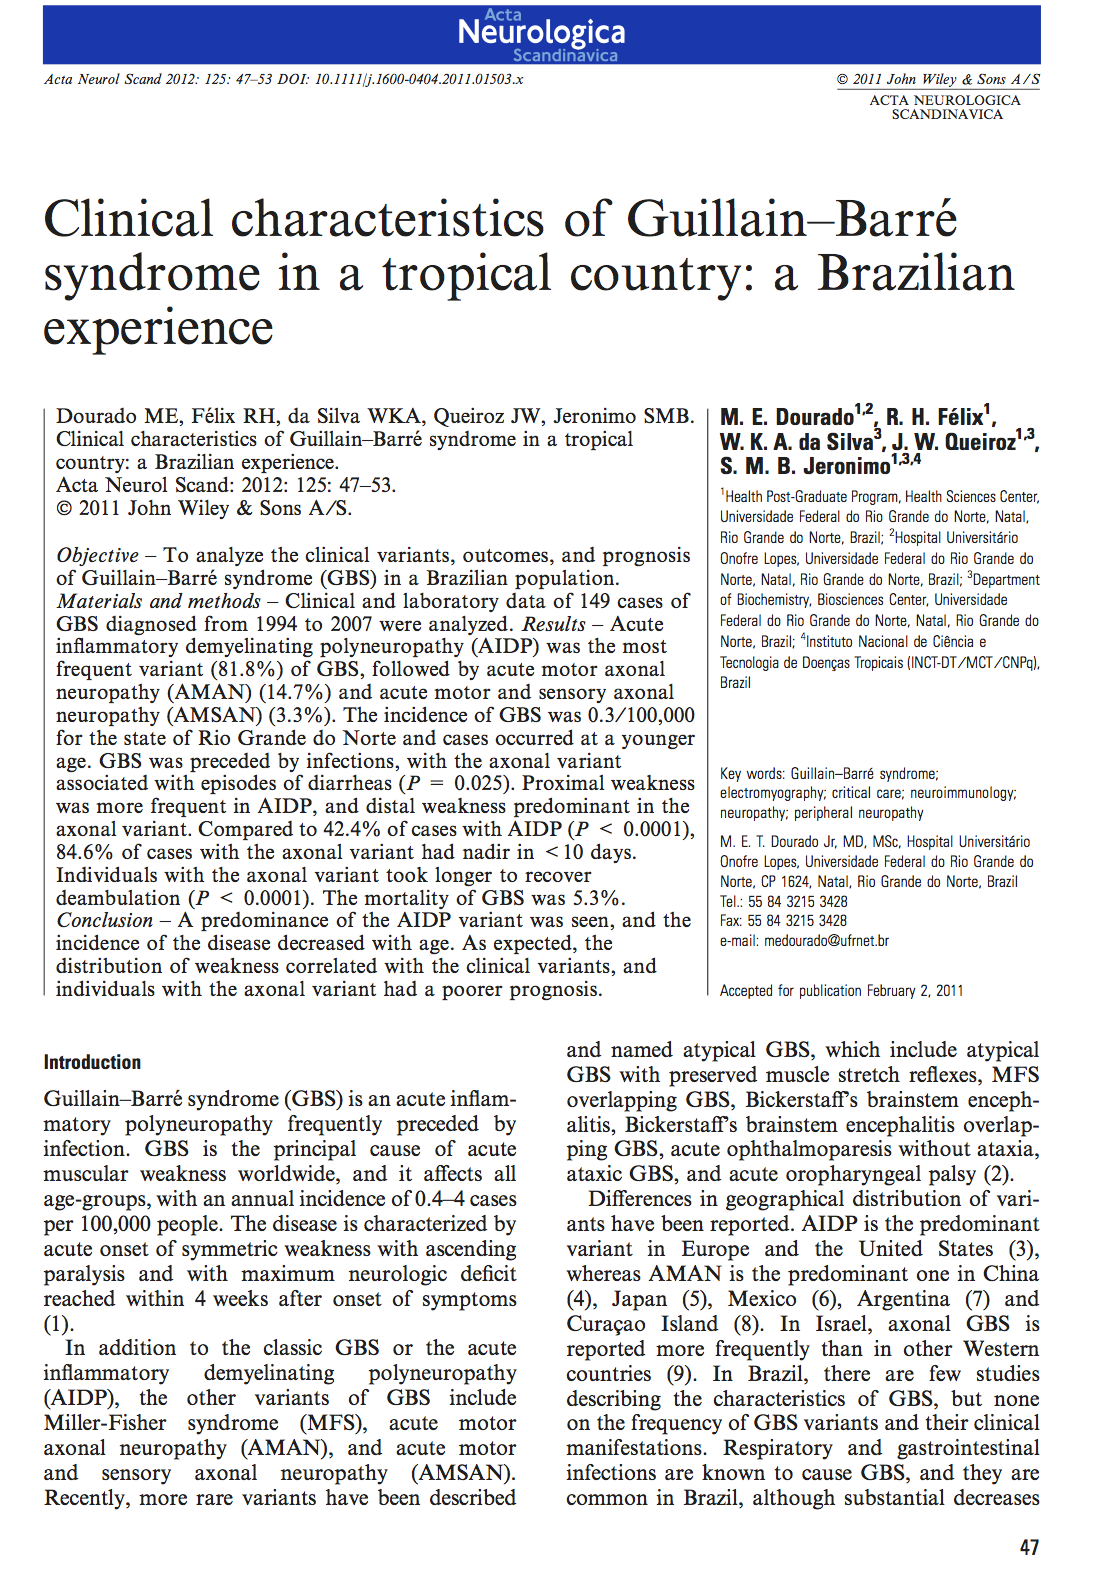 128 Anexo 6: Artigo Clinical characteristics of Guillain-Barré syndrome in a